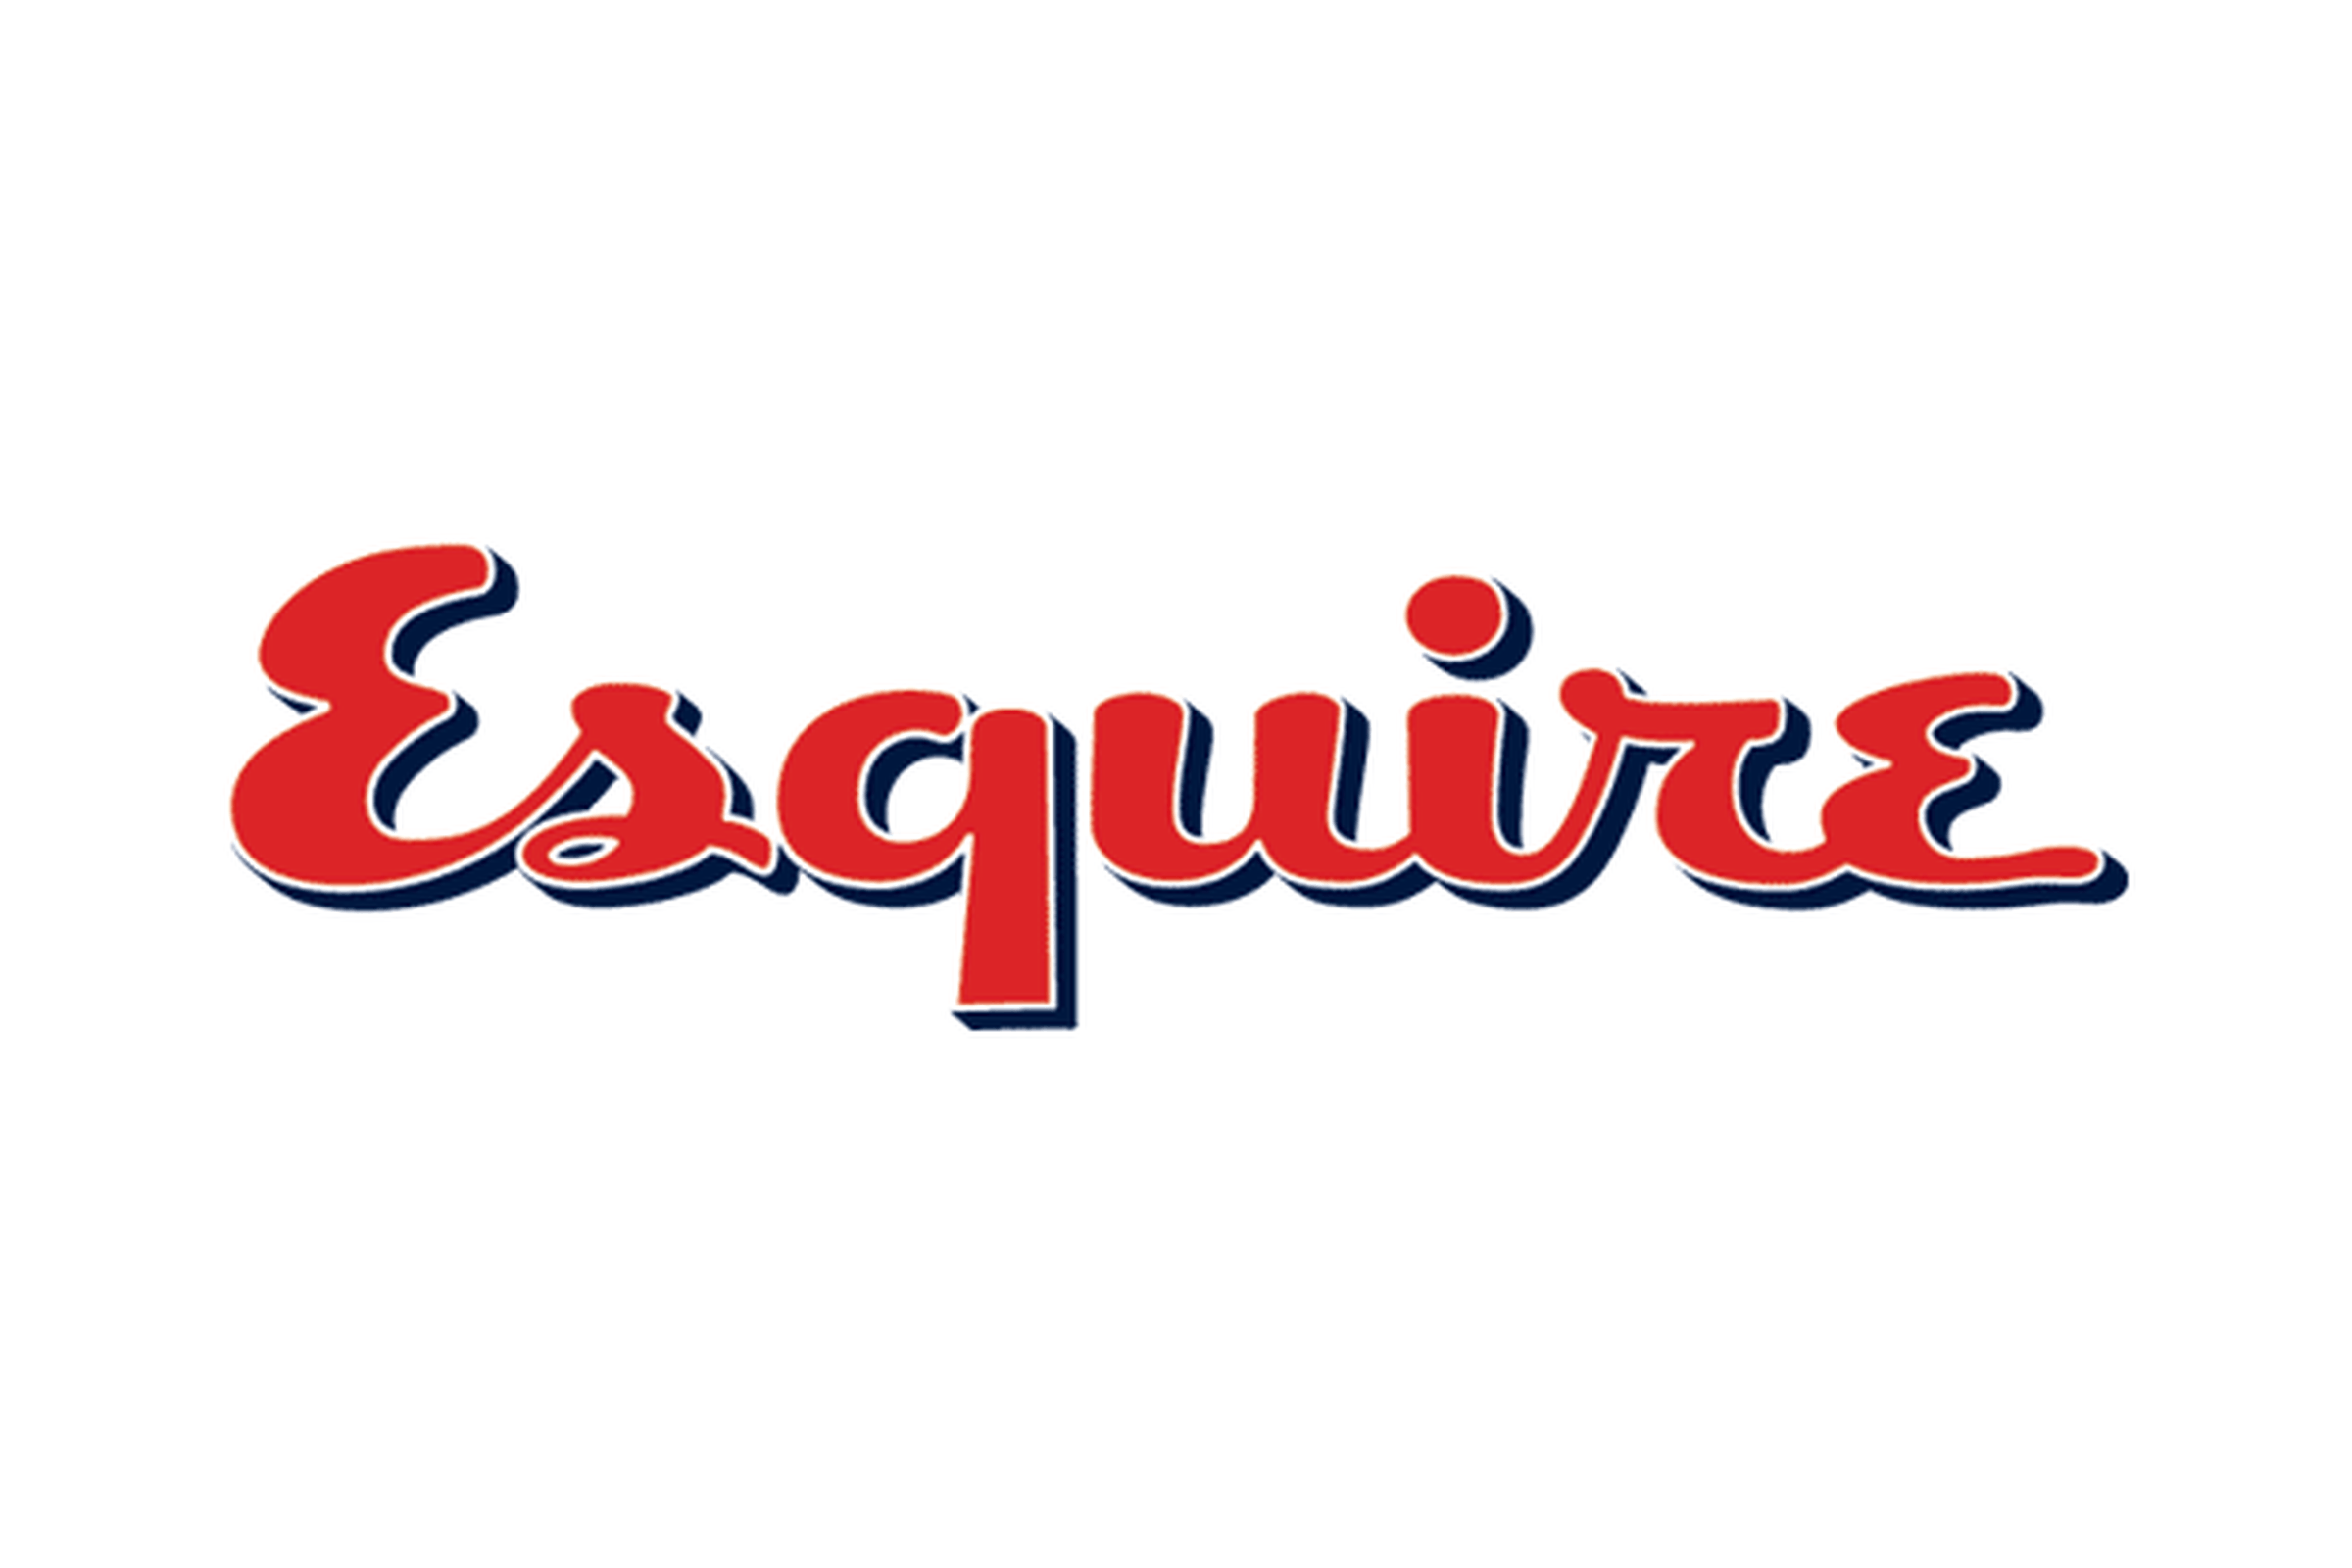 Esquire Logo